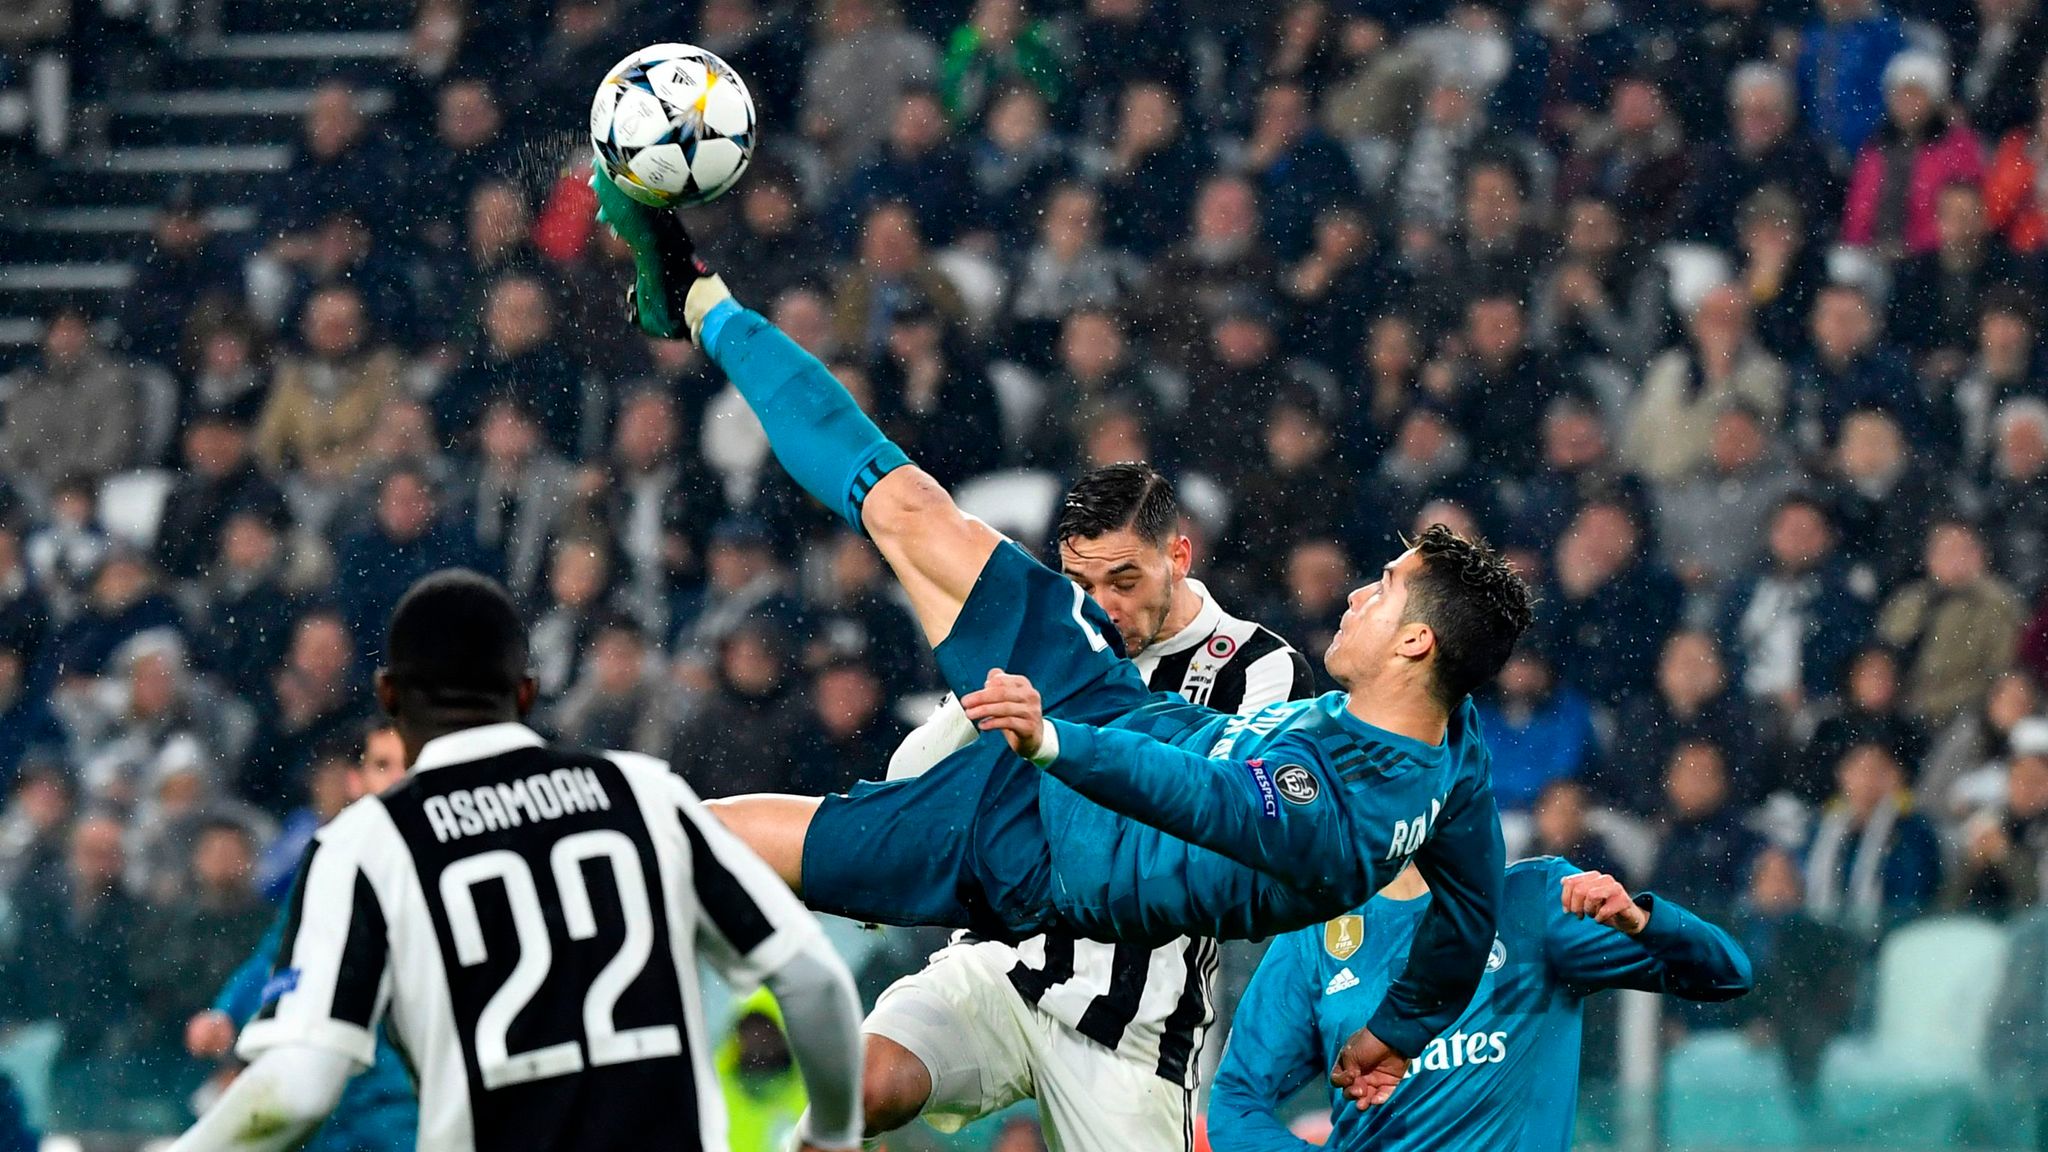 Cristiano Ronaldo goal, Juventus 1 - Atlético de Madrid 0